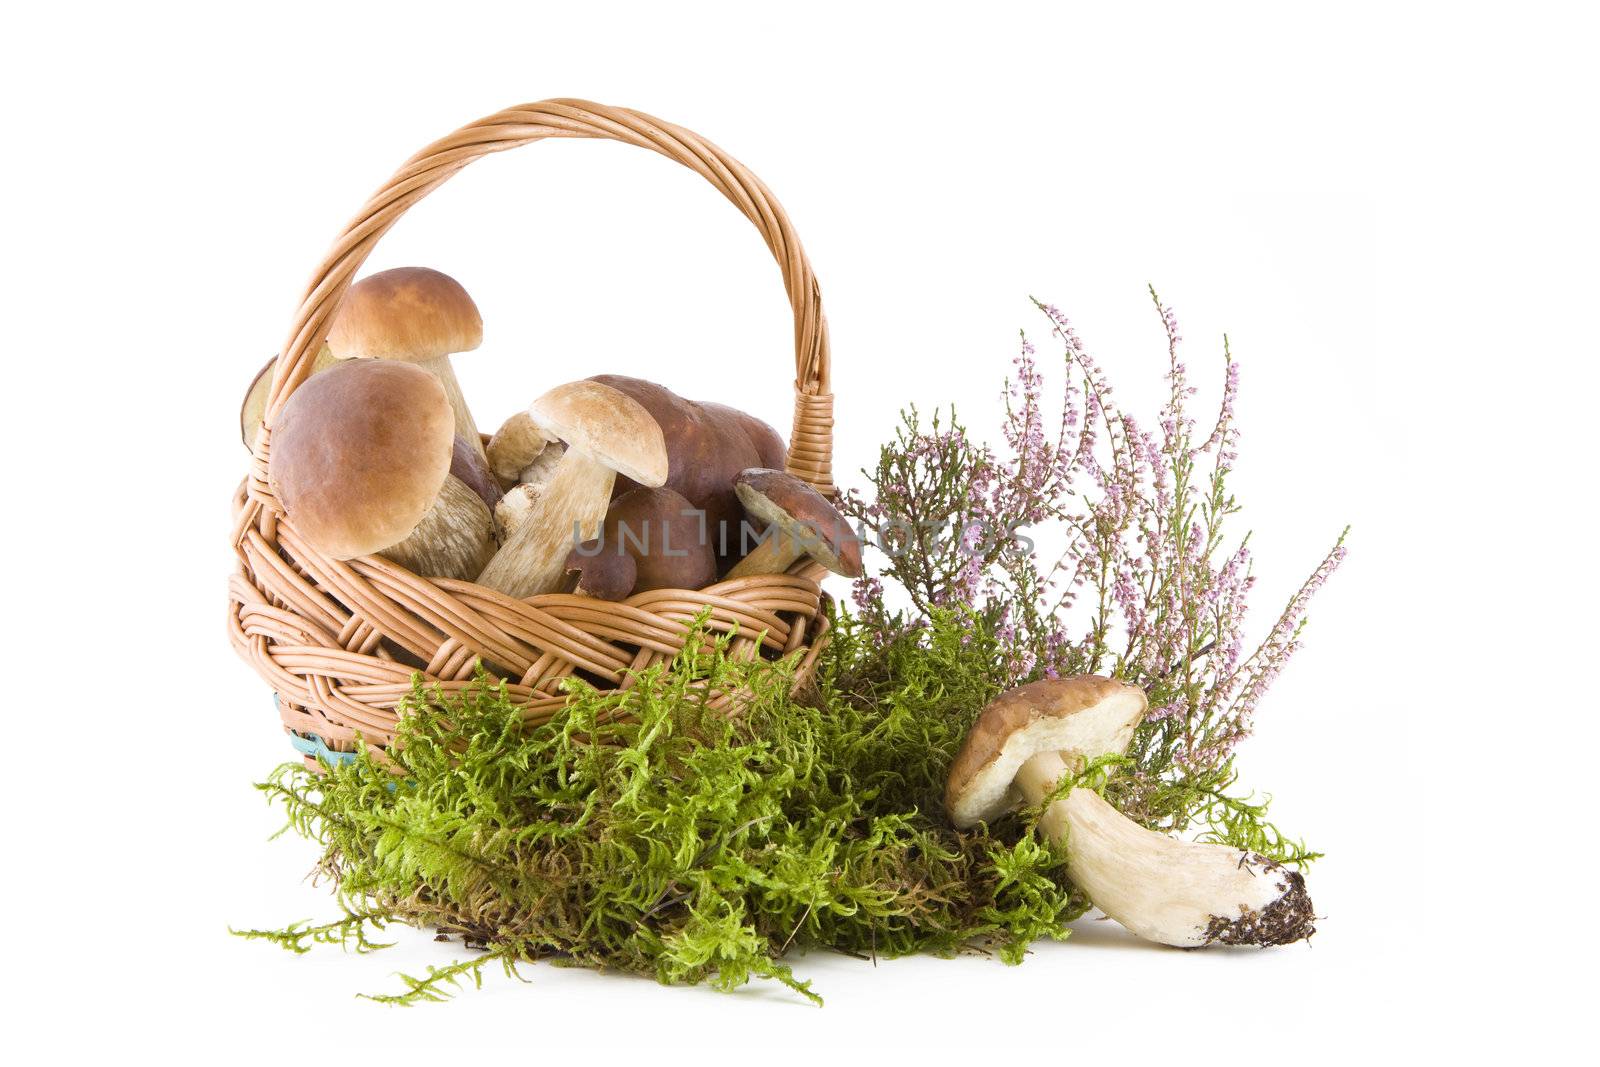 Boletus mushrooms by Gbuglok